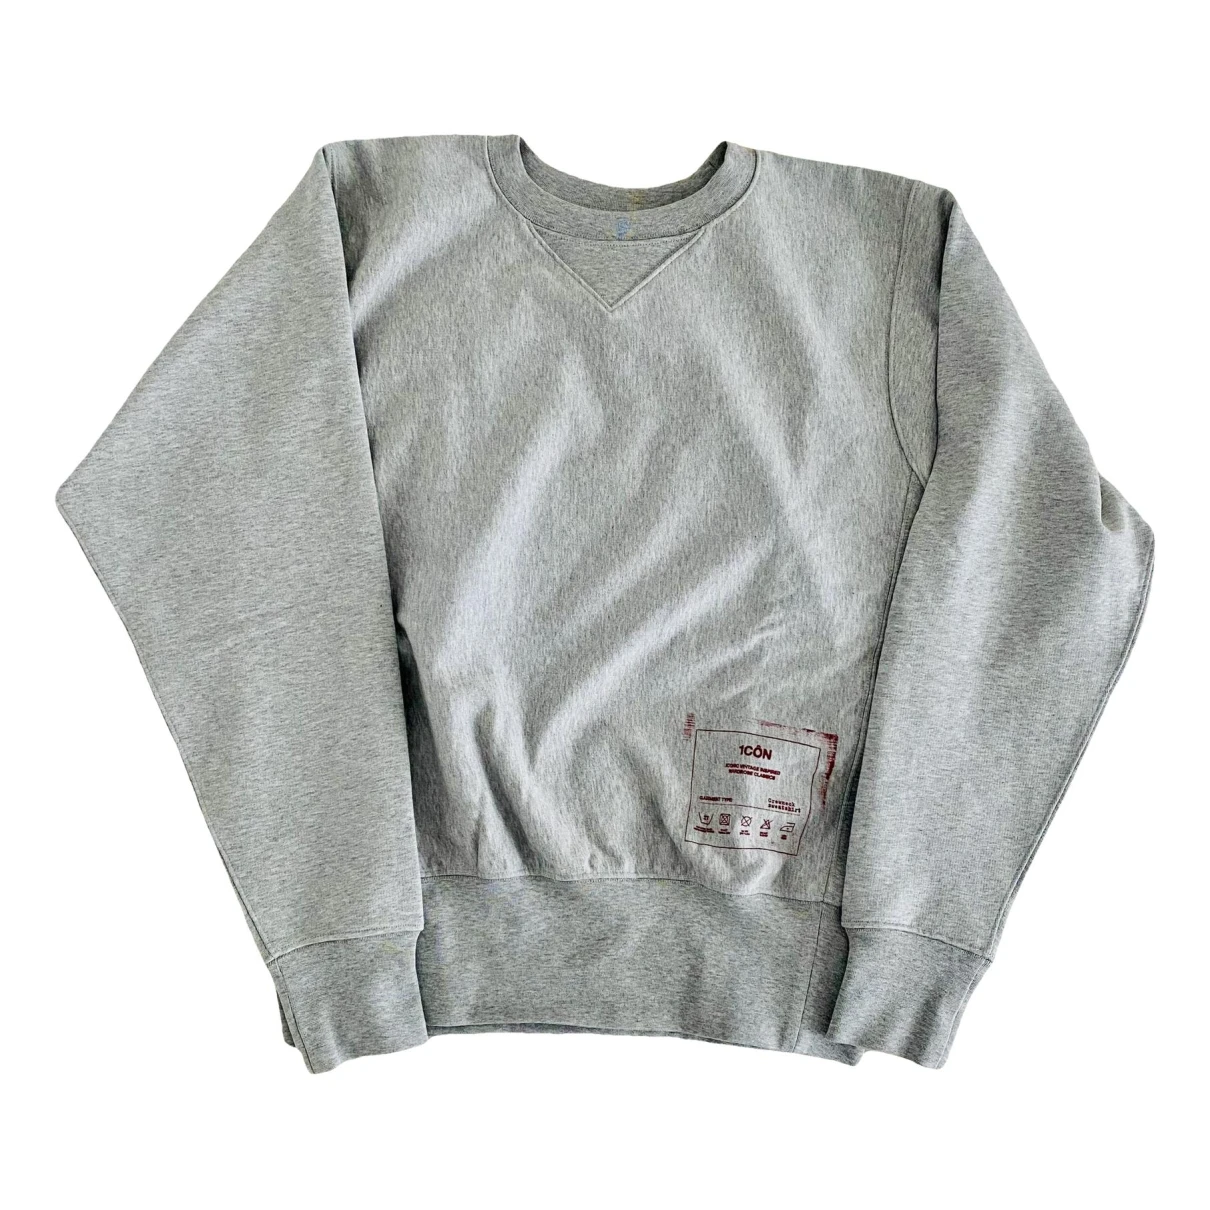 Pre-owned Maison Margiela Sweatshirt In Grey